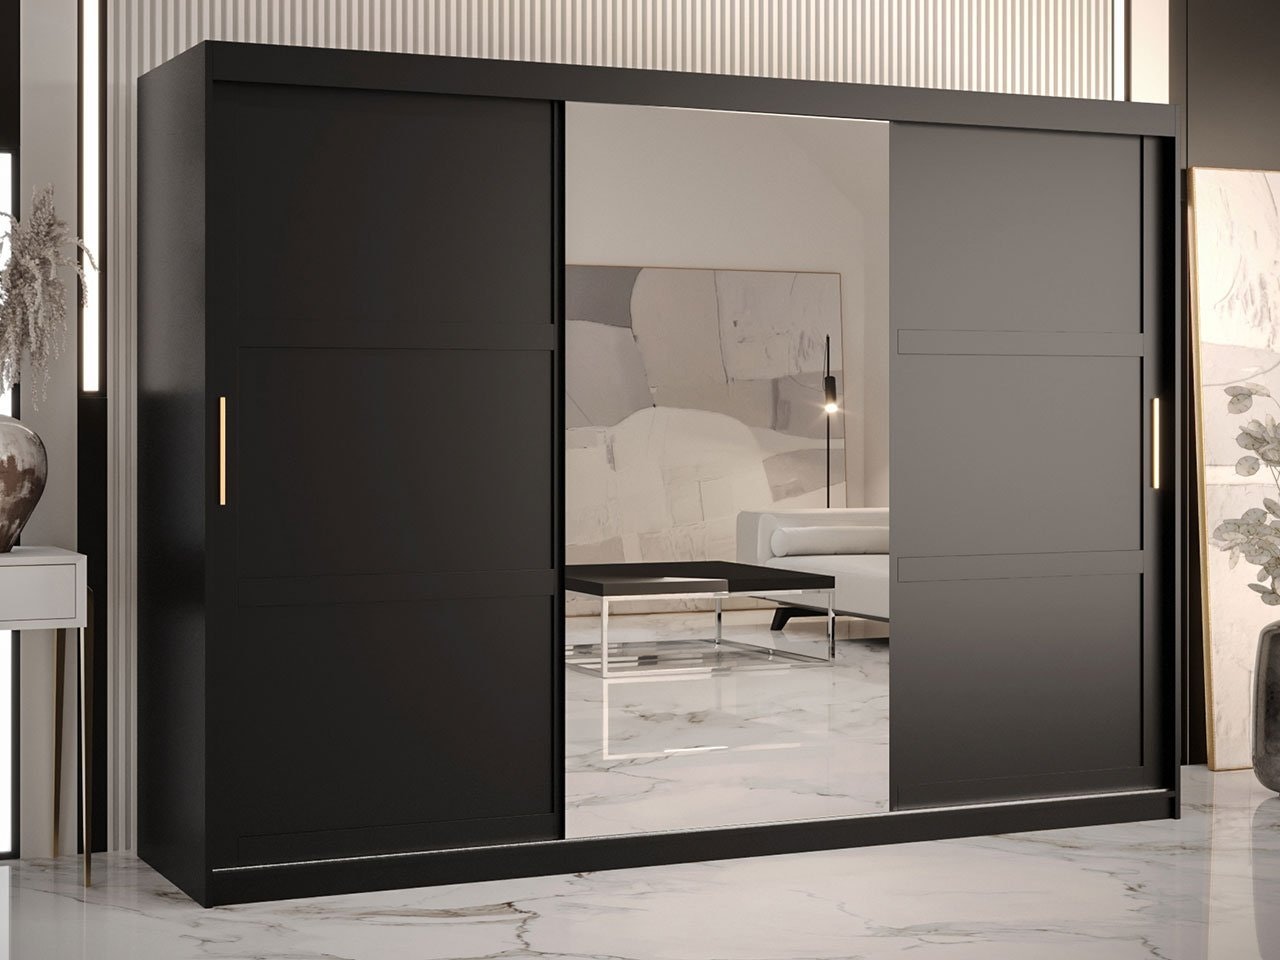 STOR GARDEROB 250 CM TEROSPITO 2 MED SPEGEL VIT ELLER SVART - Mina Möbler -  moderna och exklusiva möbler för ditt hem.